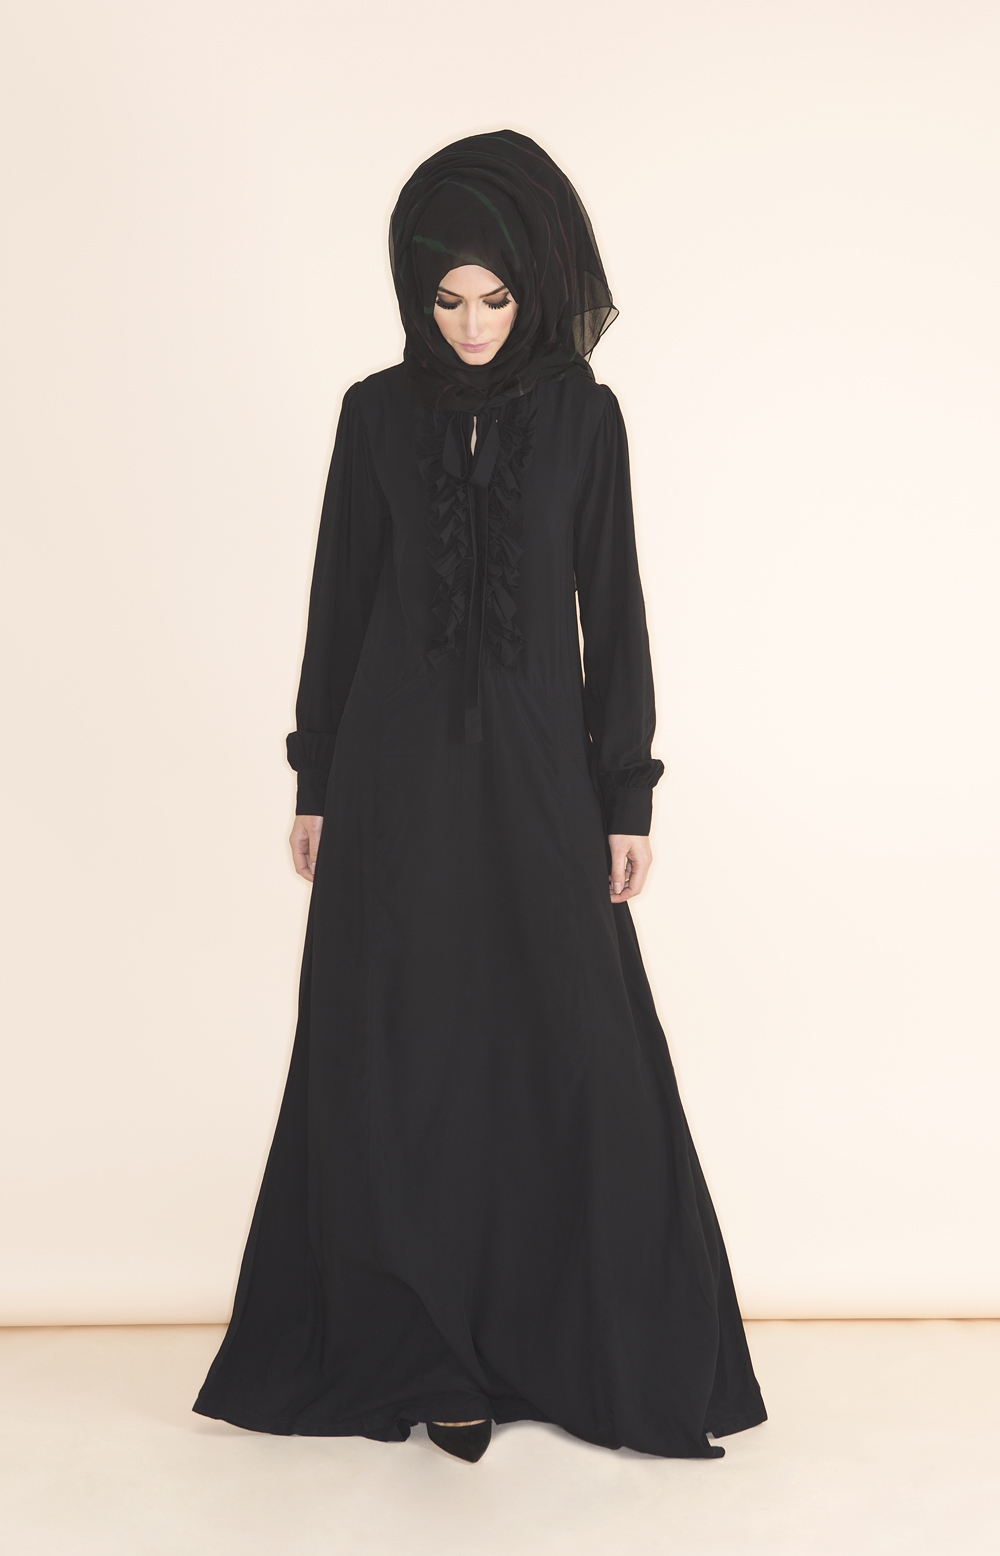 10 Contoh Model Baju Muslim Terbaru 2019